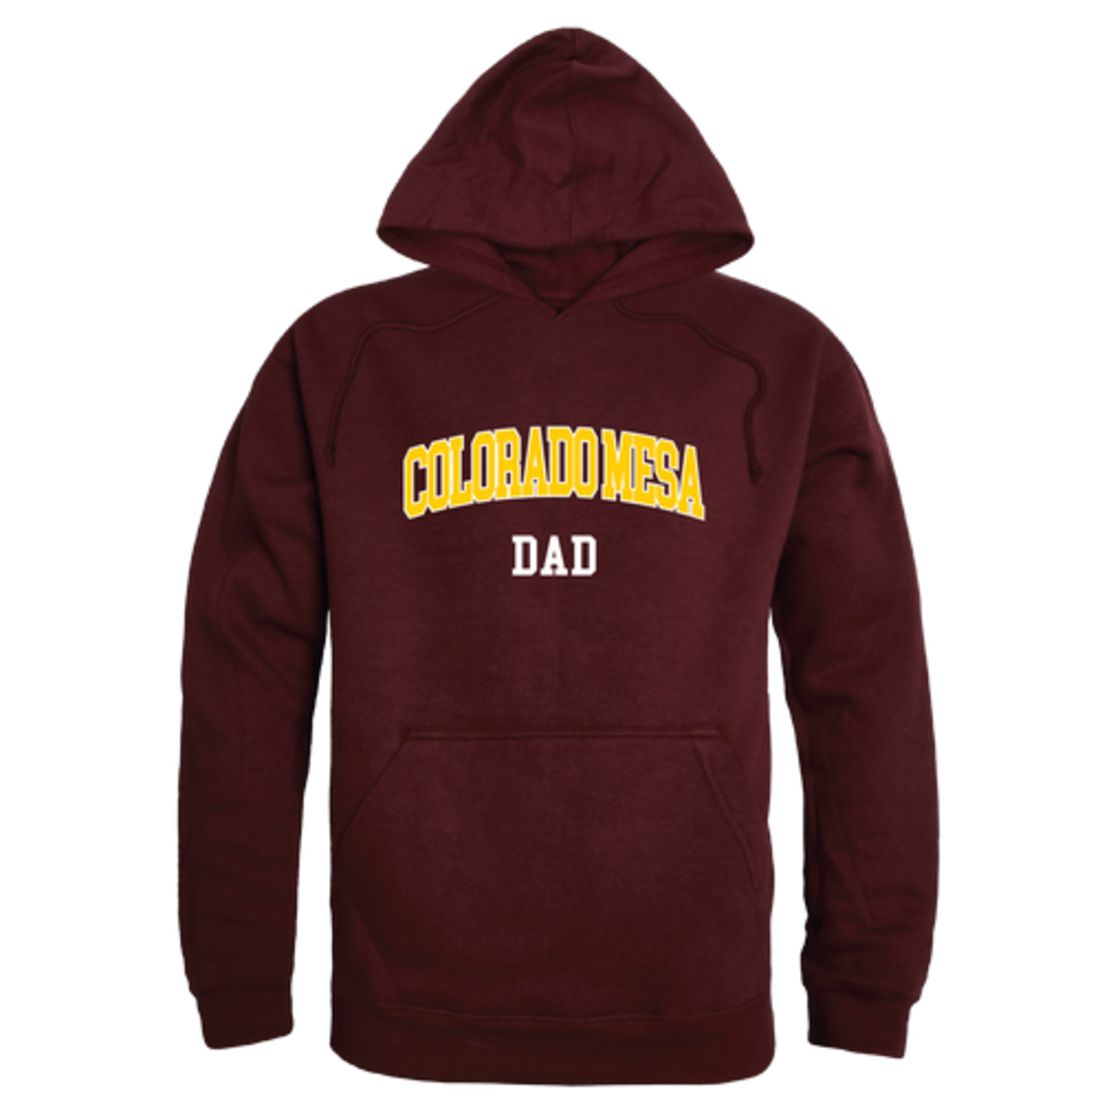 CMU Colorado Mesa University Maverick Dad Fleece Hoodie Sweatshirts Heather Grey-Campus-Wardrobe